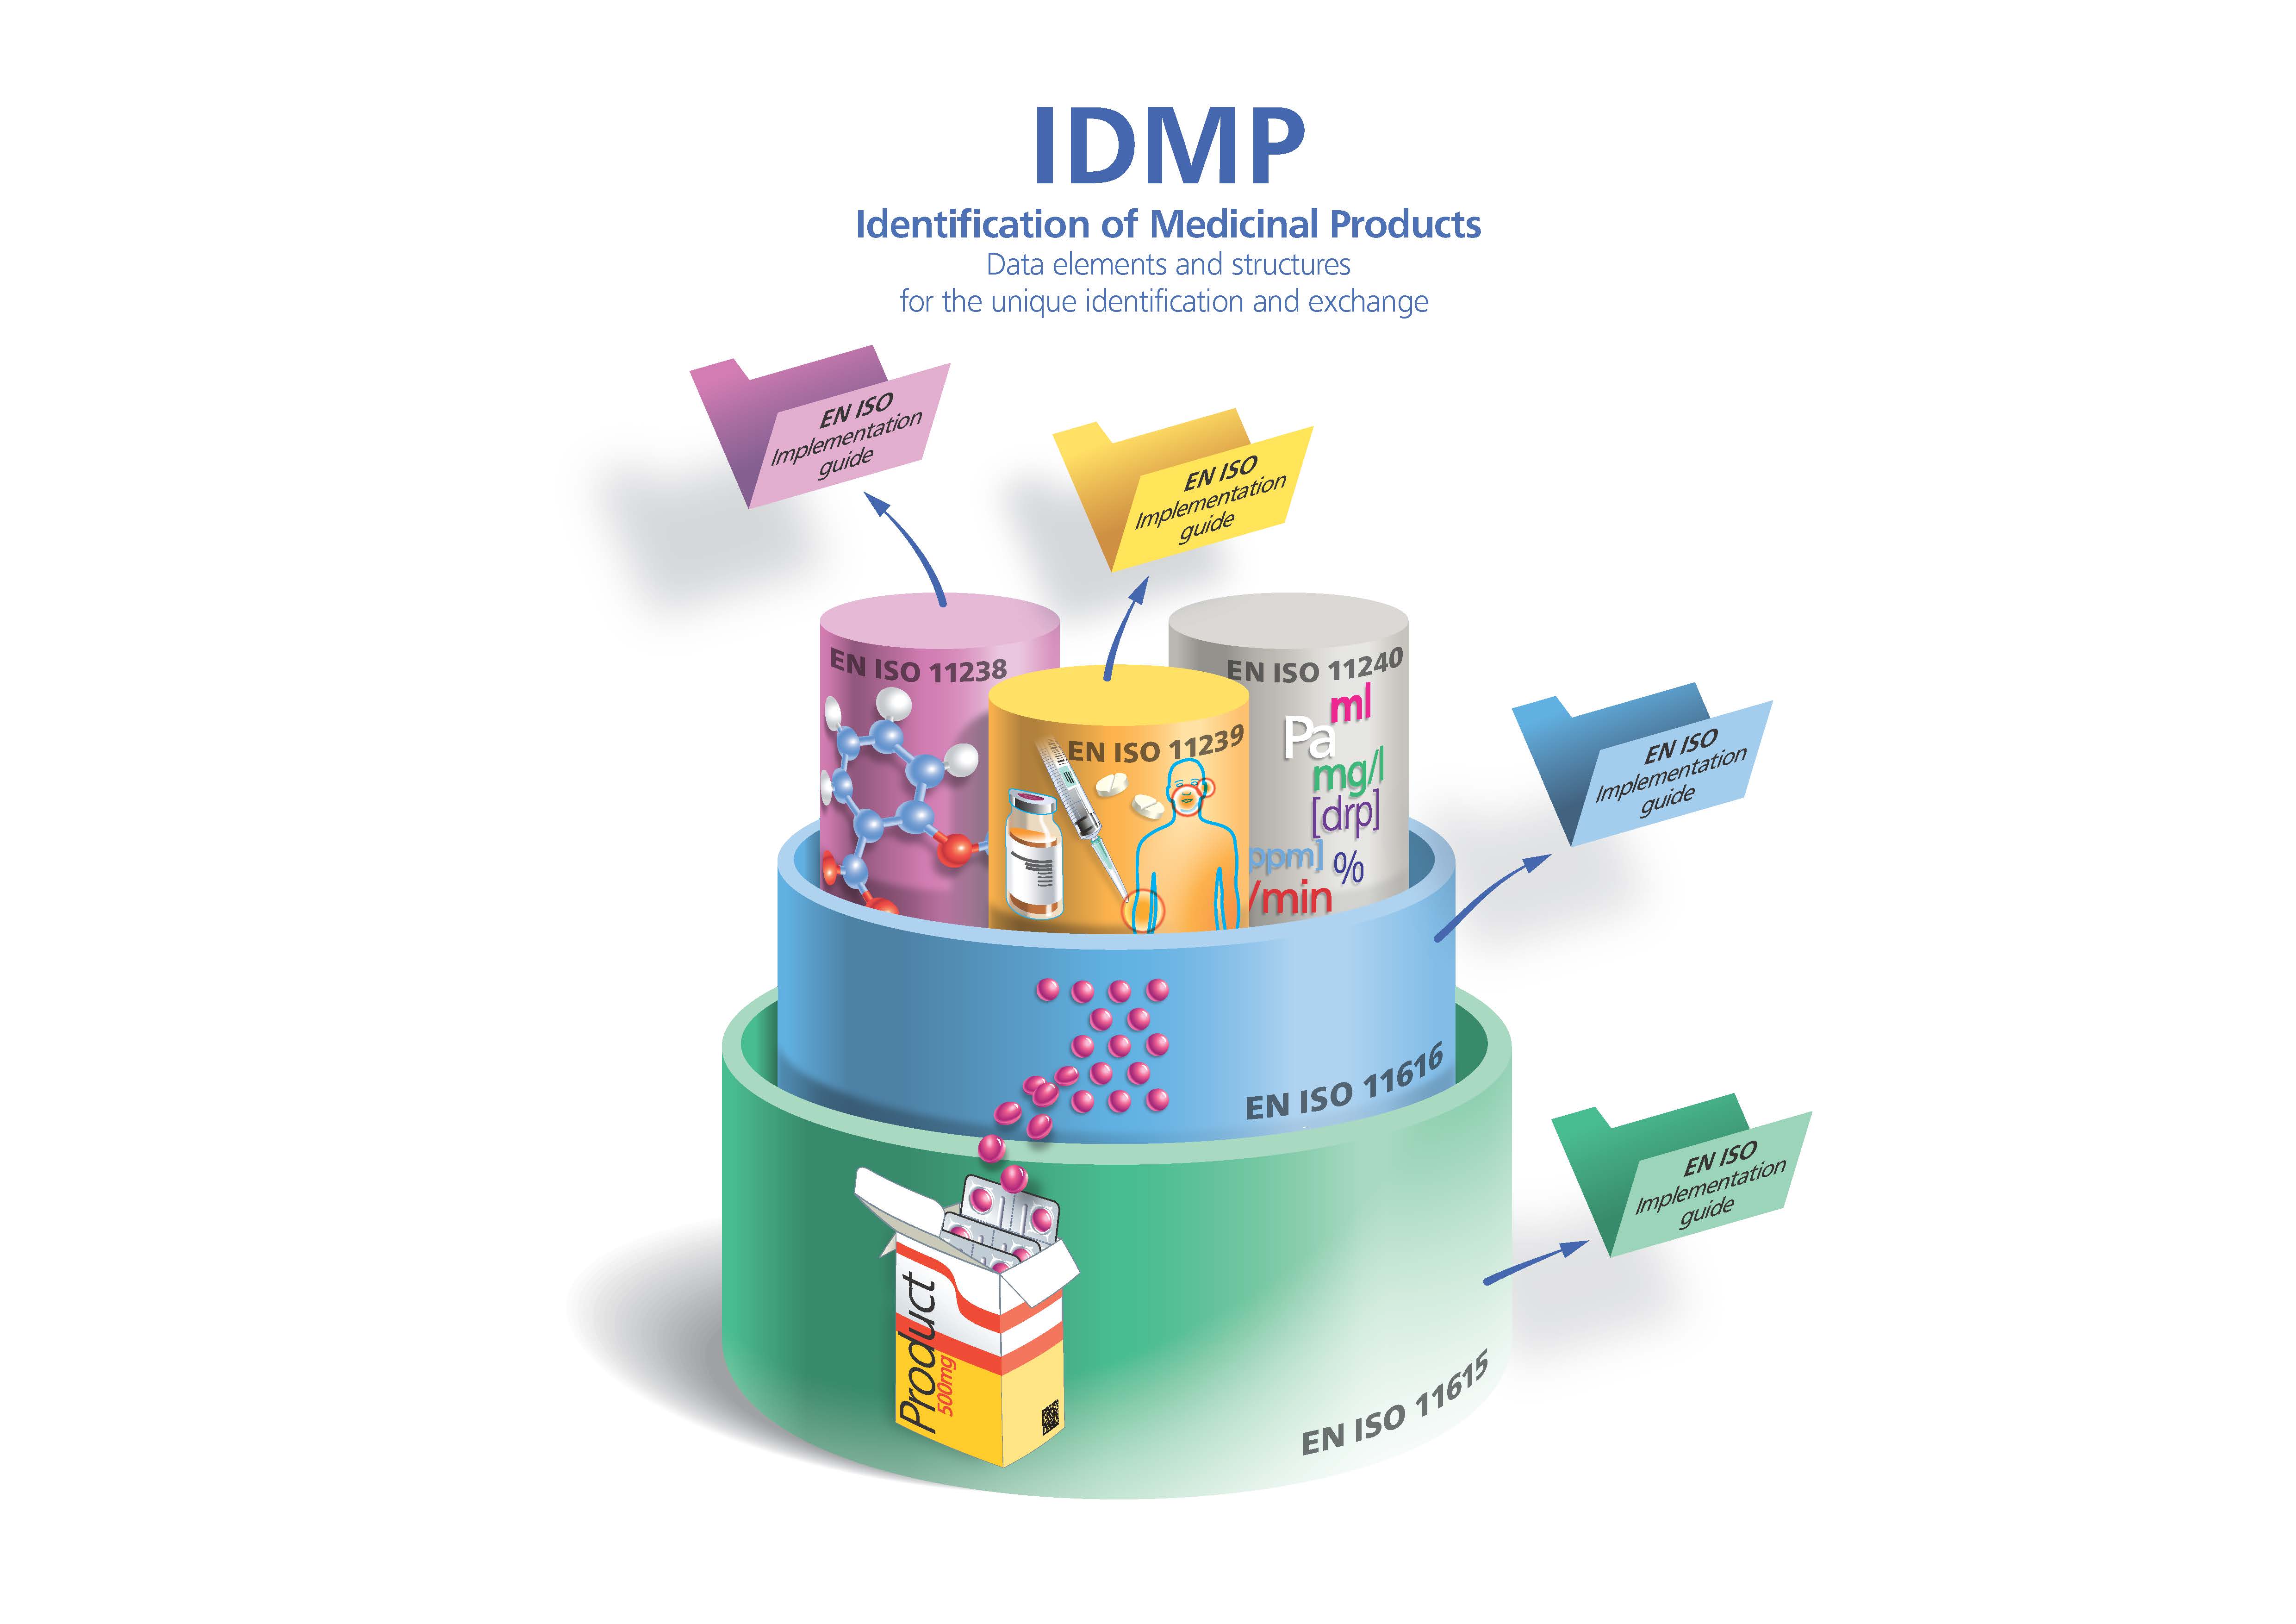 IDMP schema